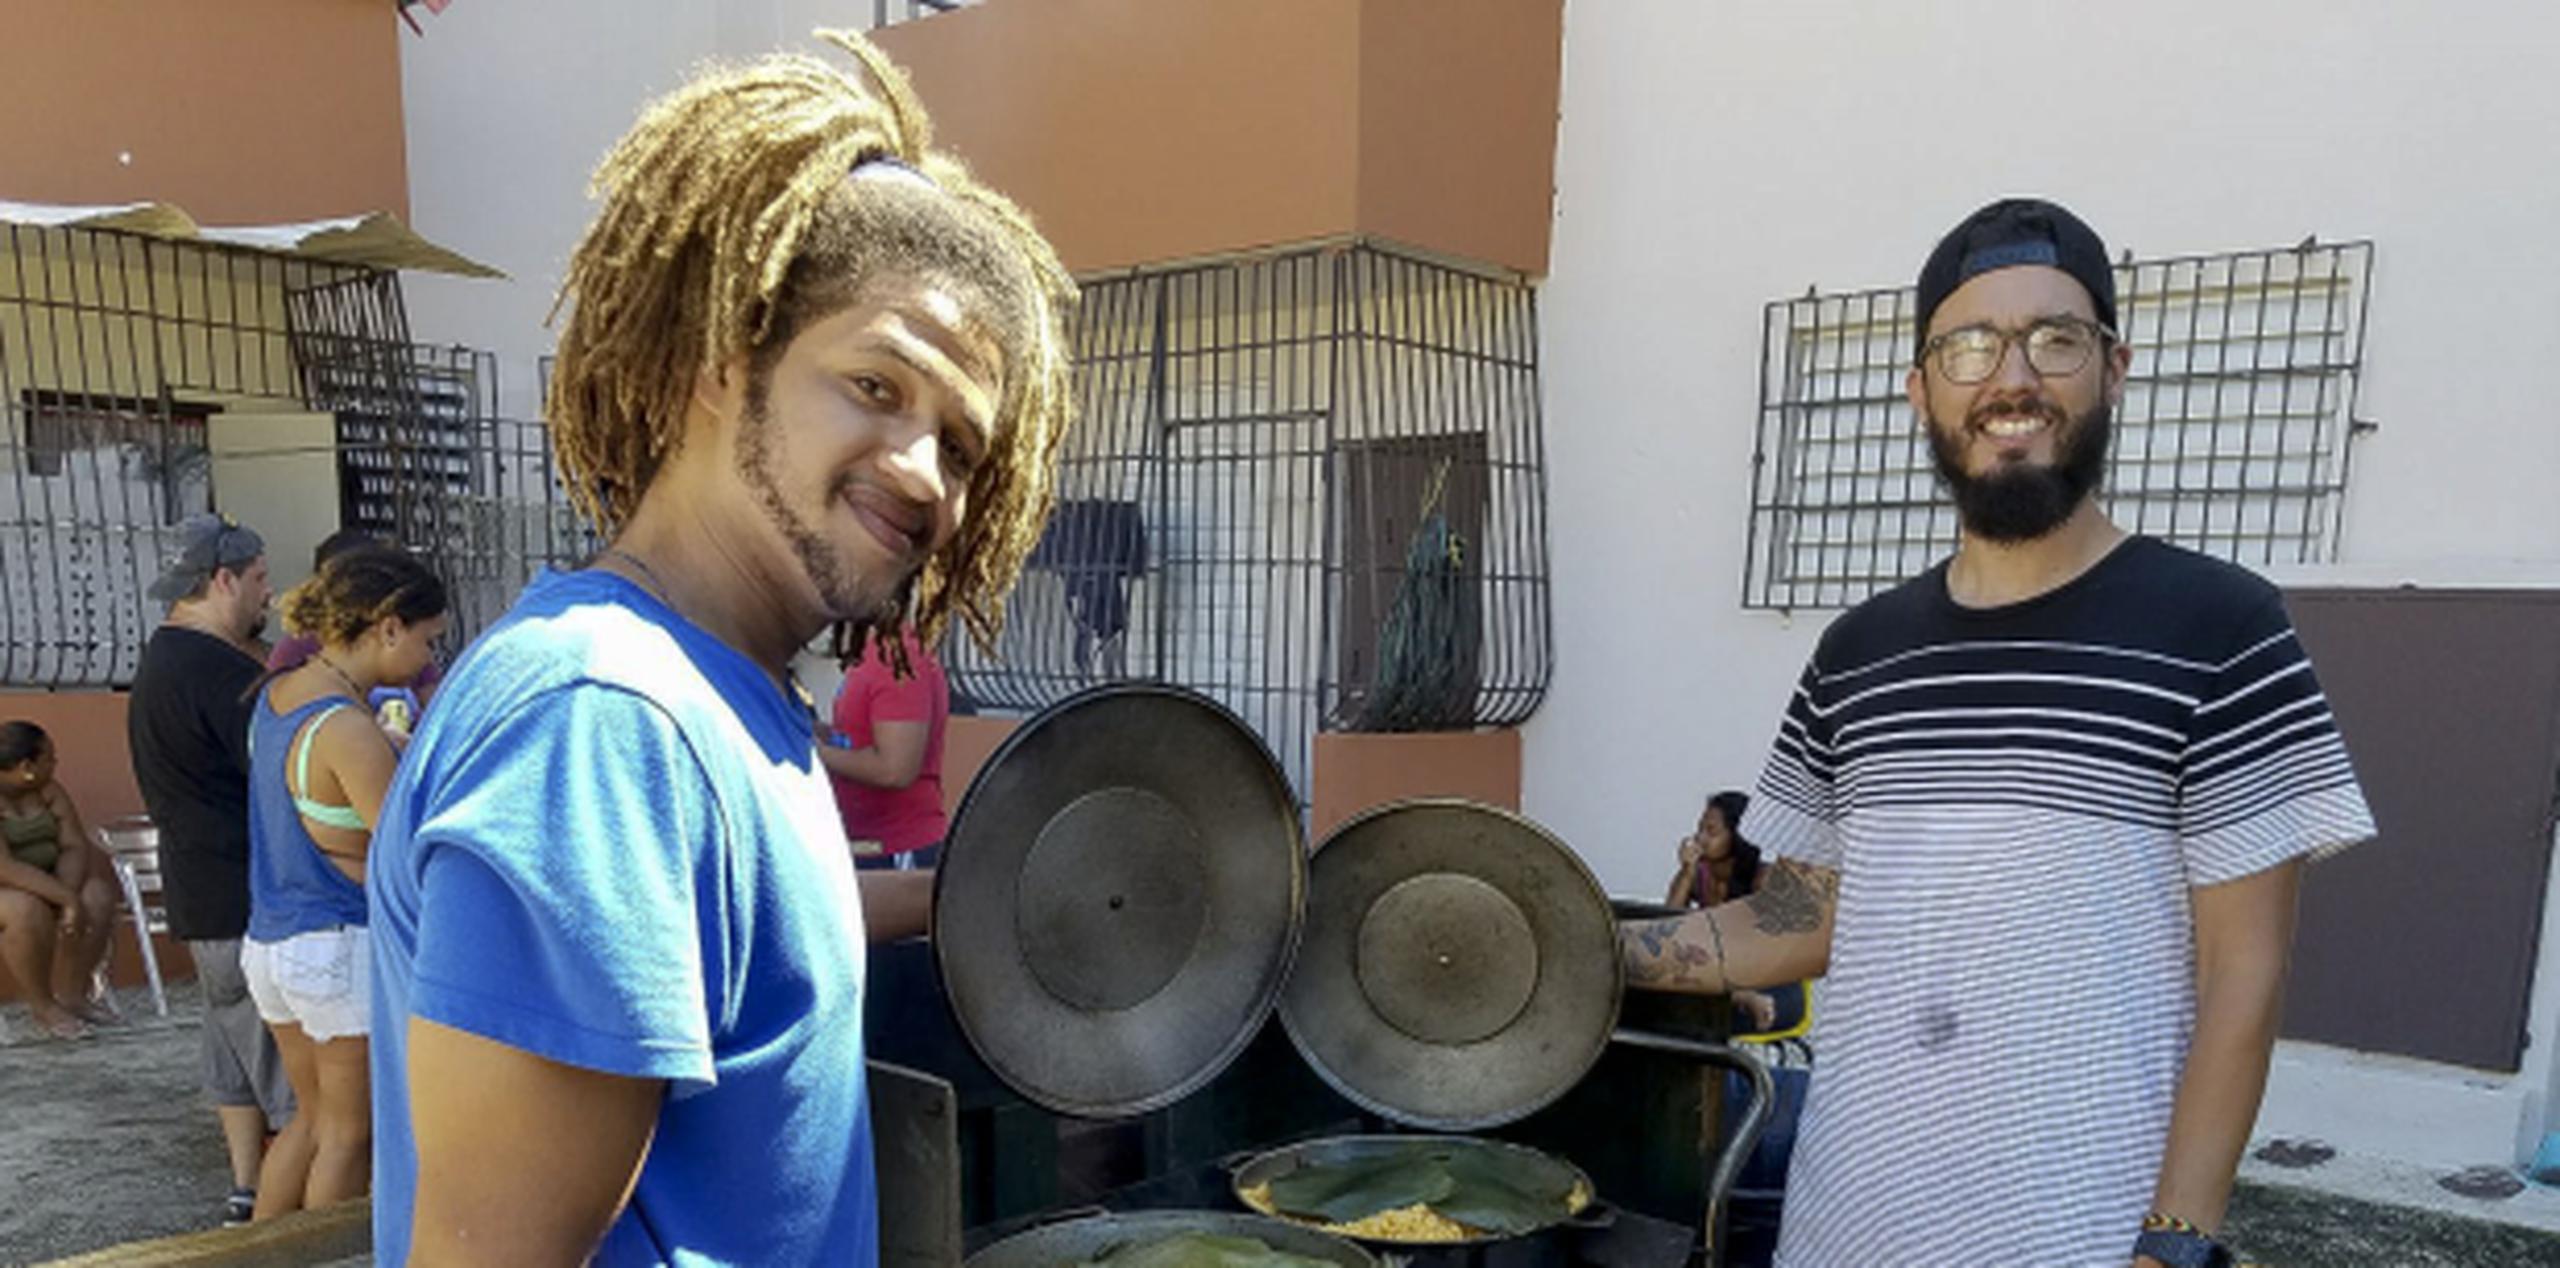 El chef Isaías reparte con gusto la comida que prepara a los residentes de la barriada Playita, en Santurce.
 (barbara.figueroa@primerahora.com)